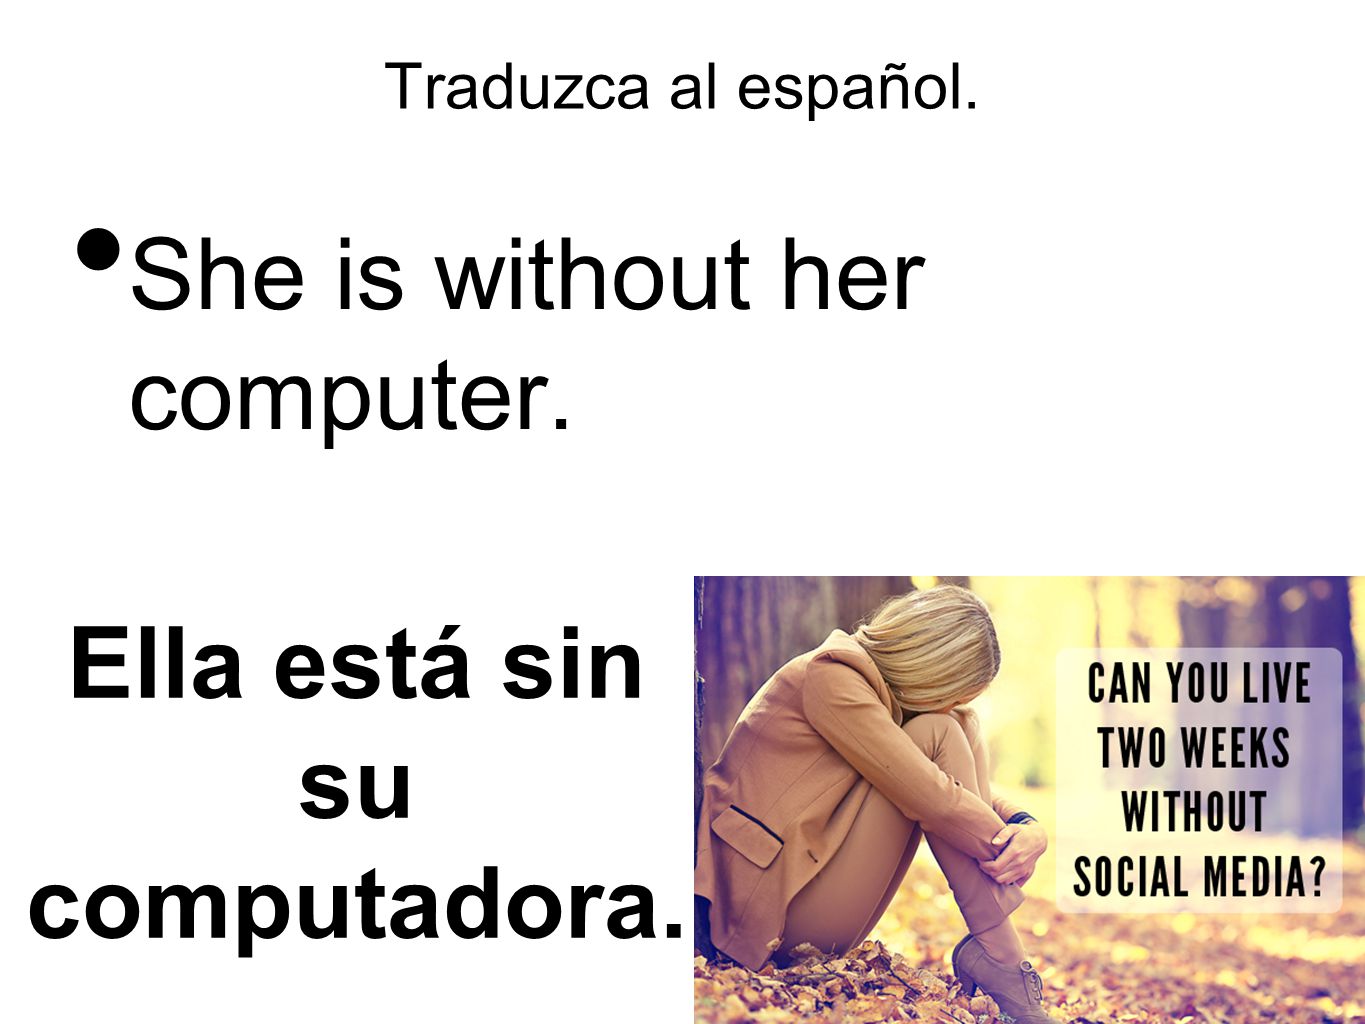 Ella está sin su computadora.